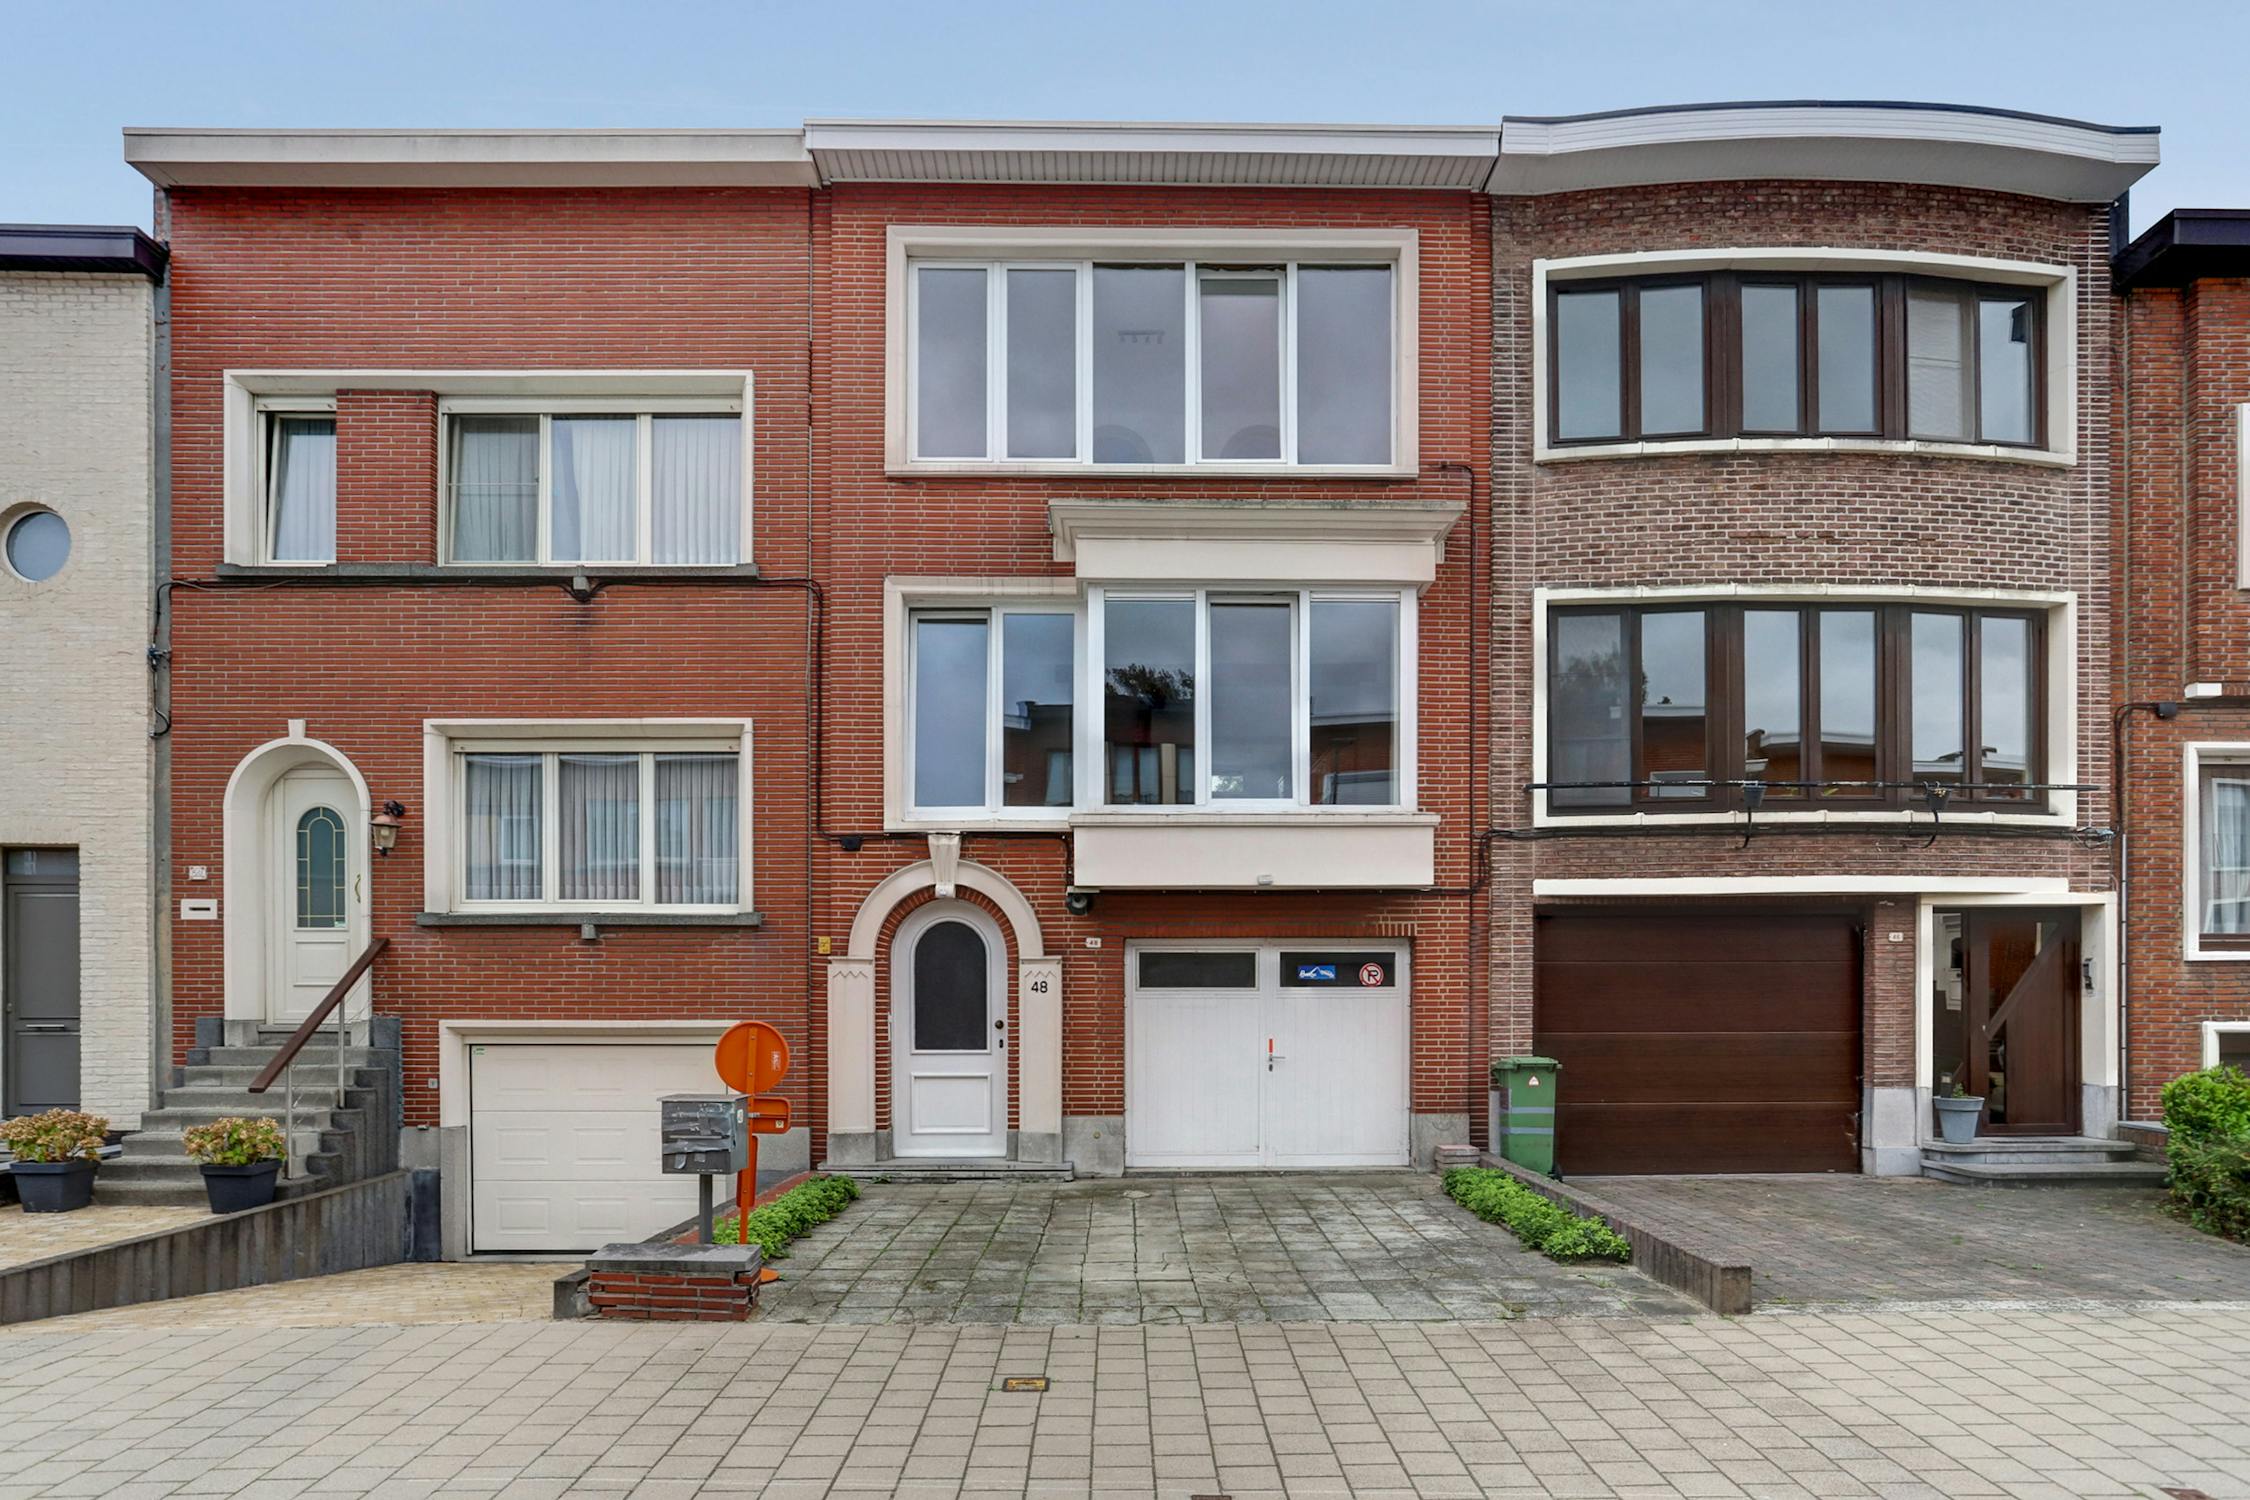 Huis verkocht Antoon van Den Bosschelaan 48, Deurne - Dewaele